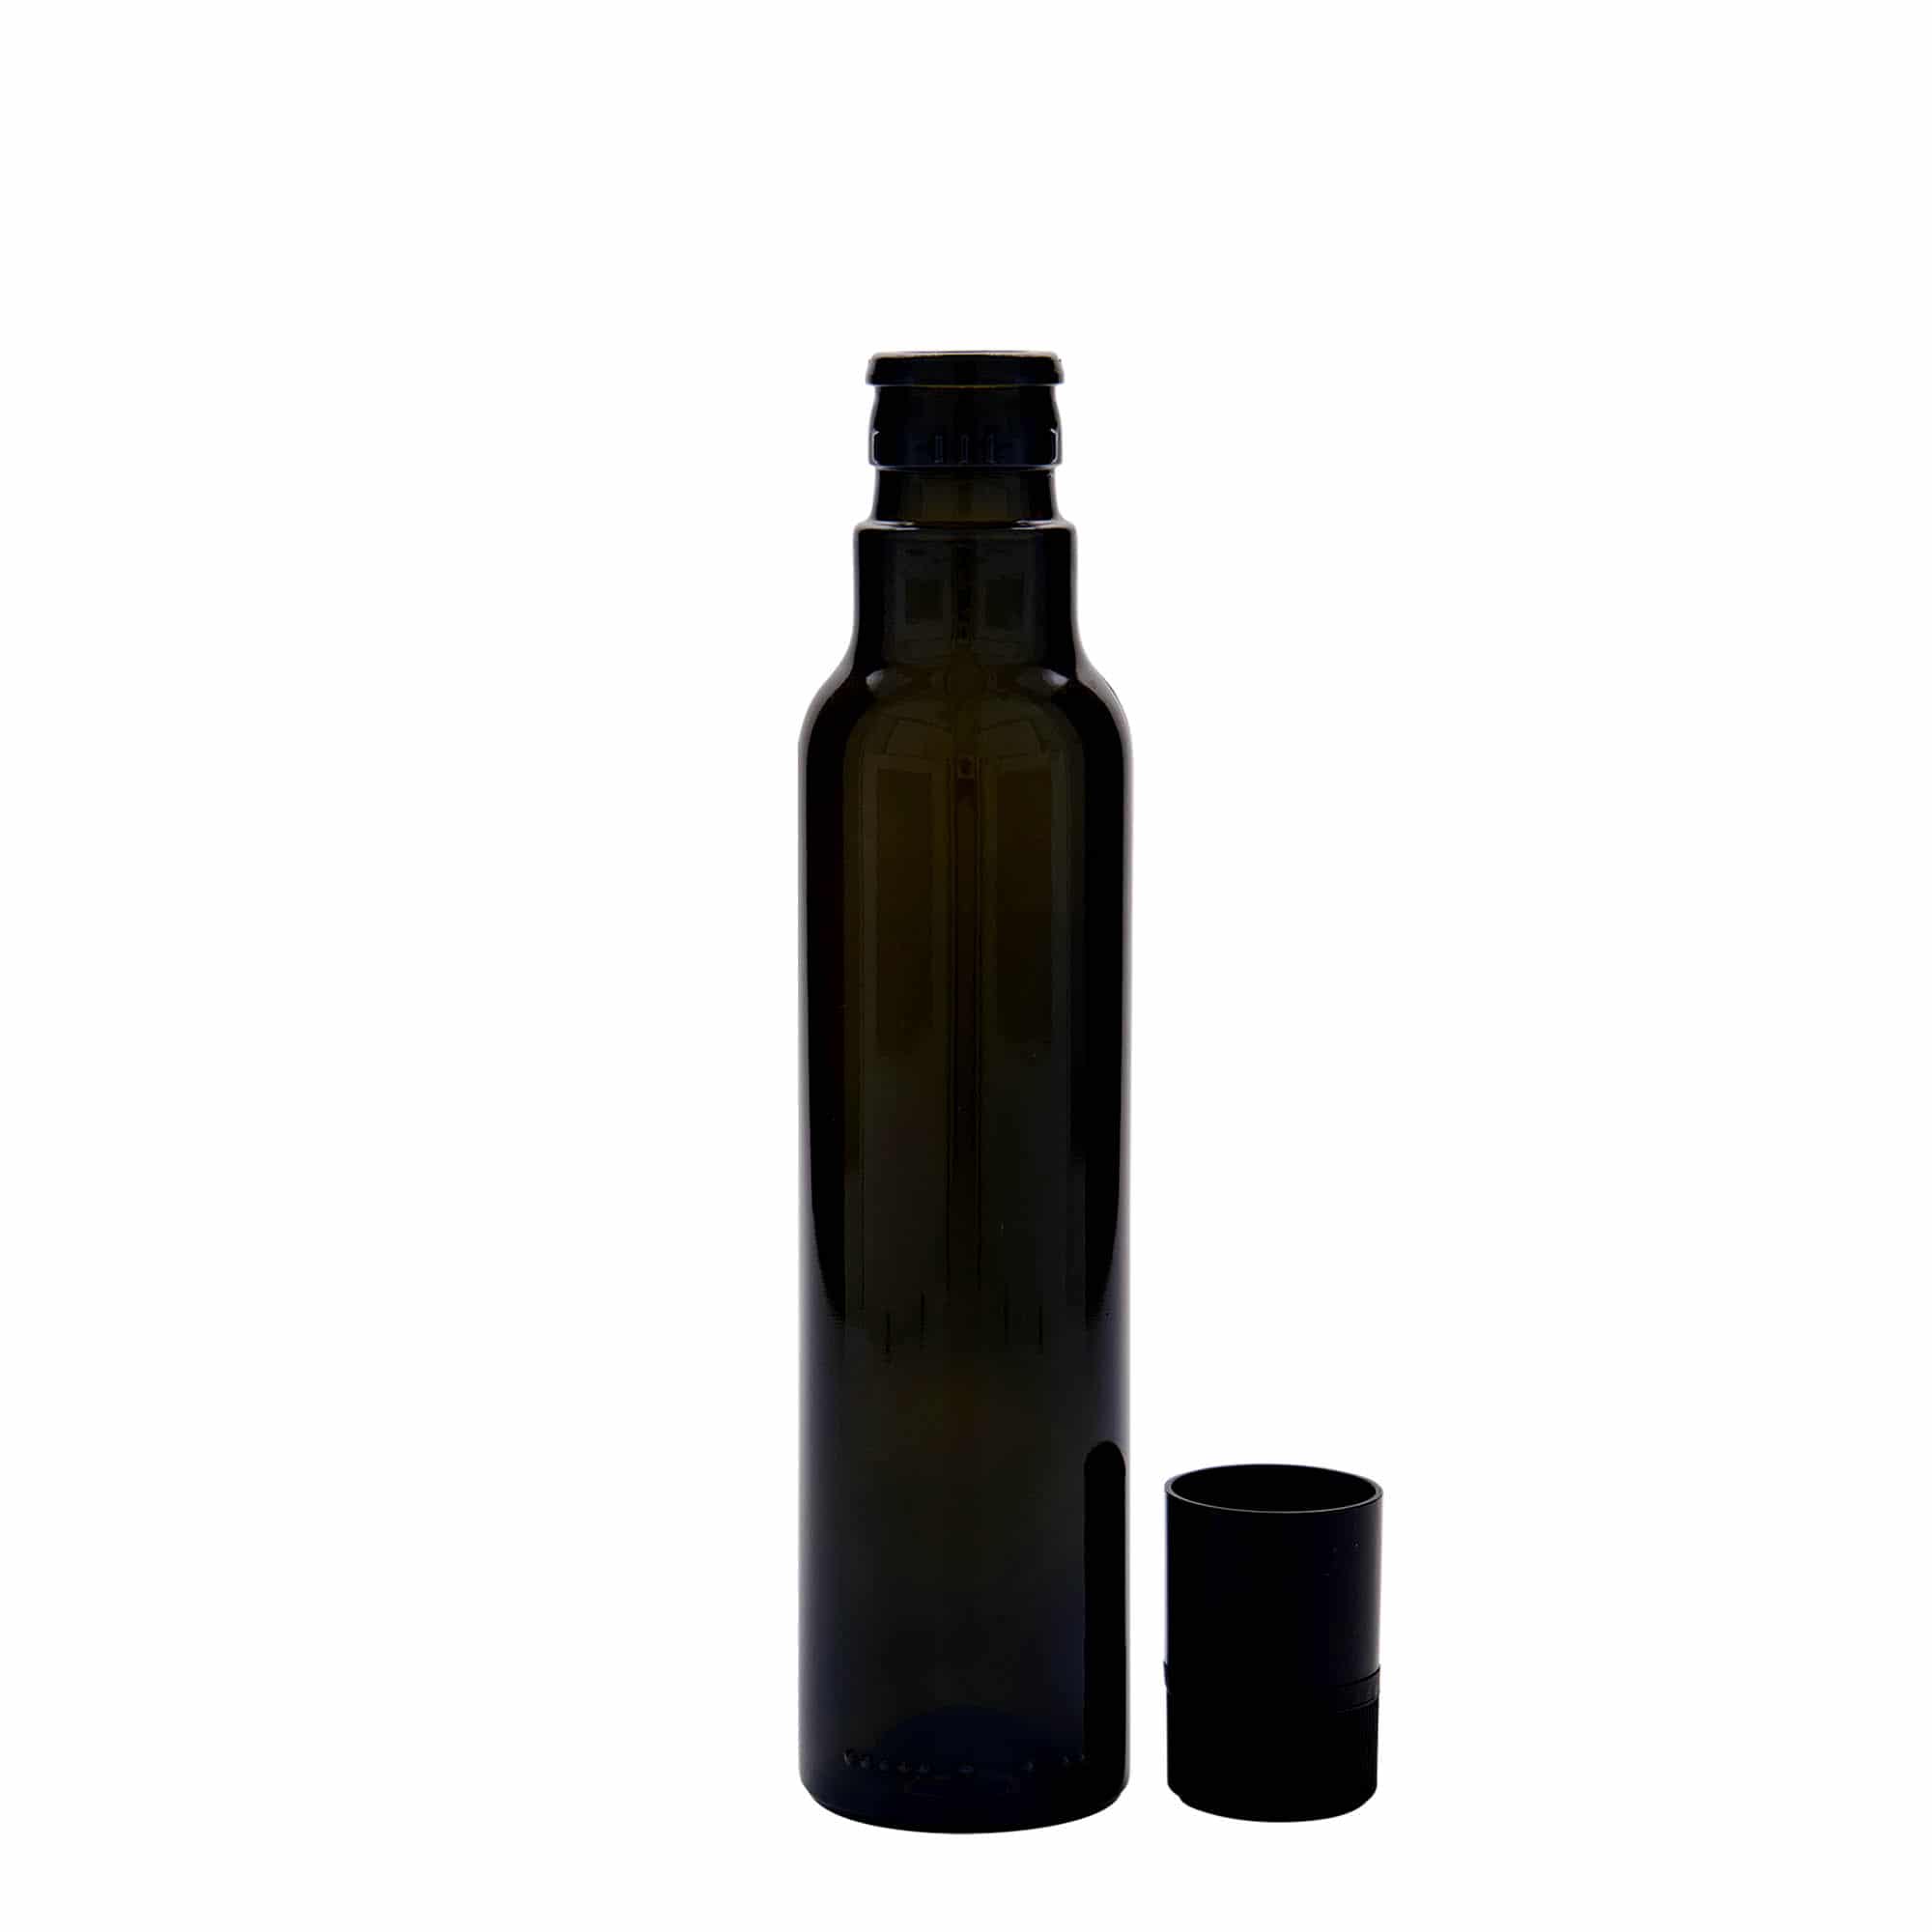 250 ml eddike-/olieflaske 'Willy New', glas, antikgrøn, åbning: DOP